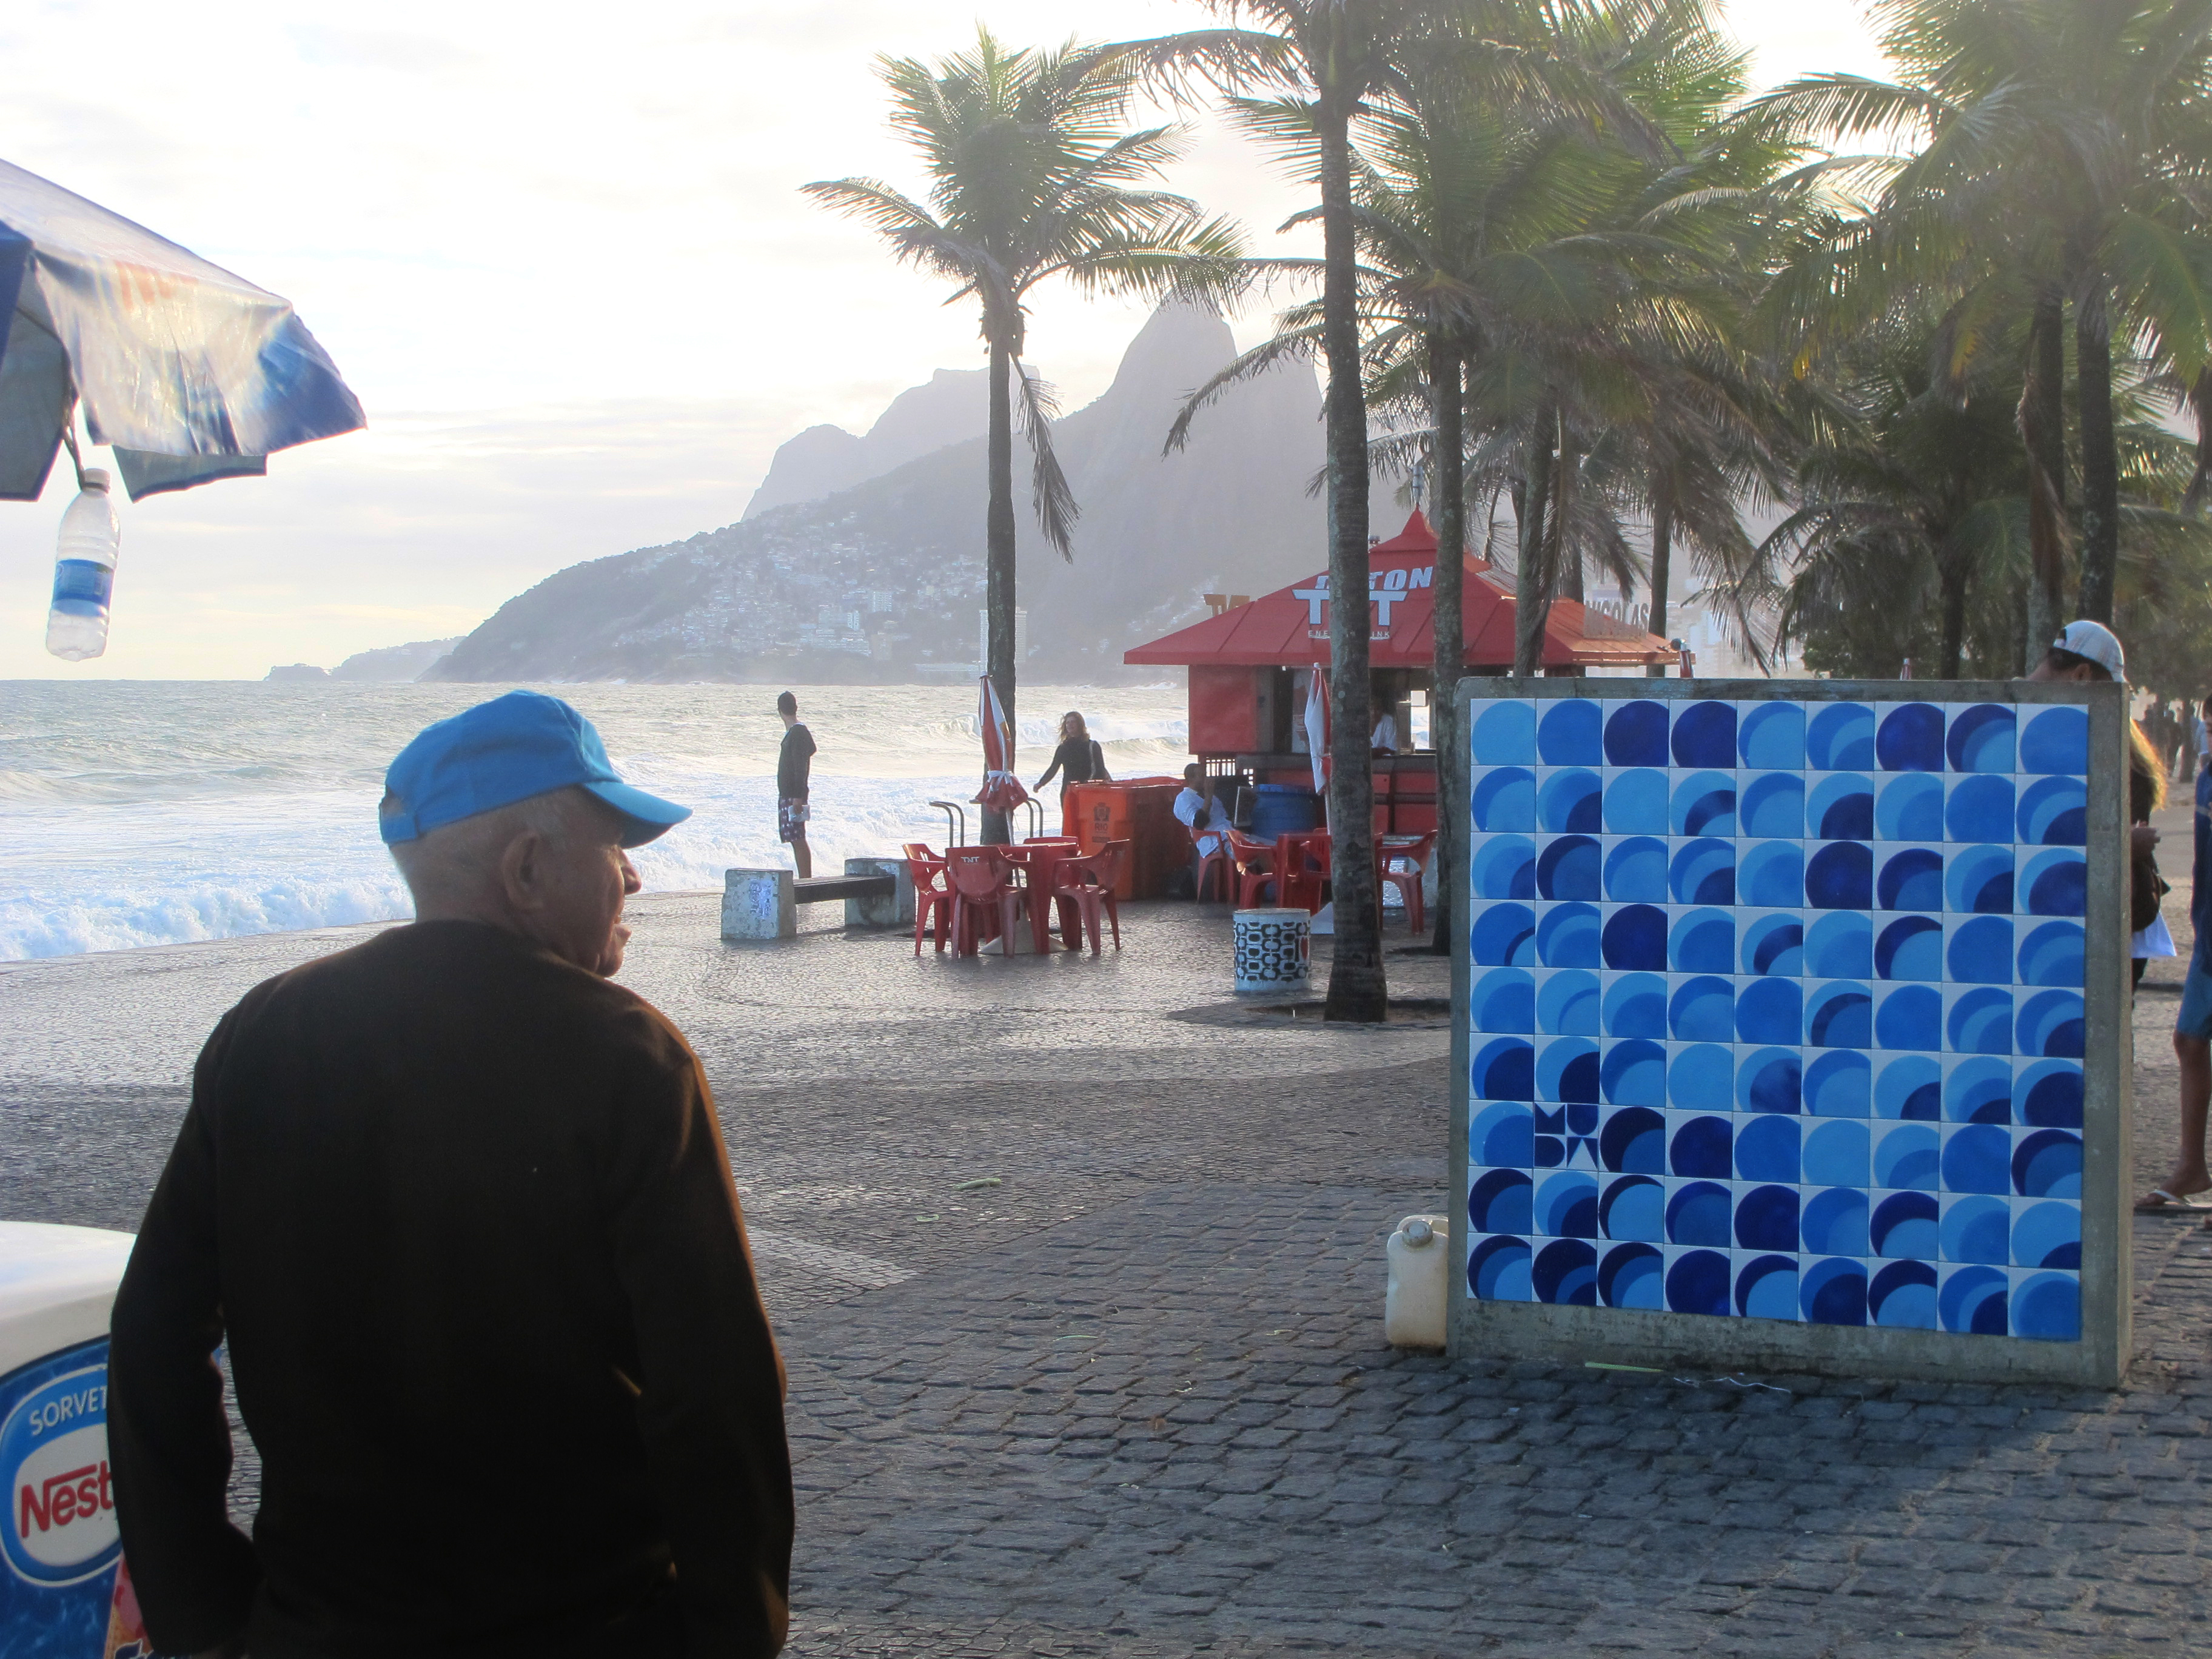 Street art inspired by the environment, MUDA in Arpoador, Rio de Janeiro, Brazil News